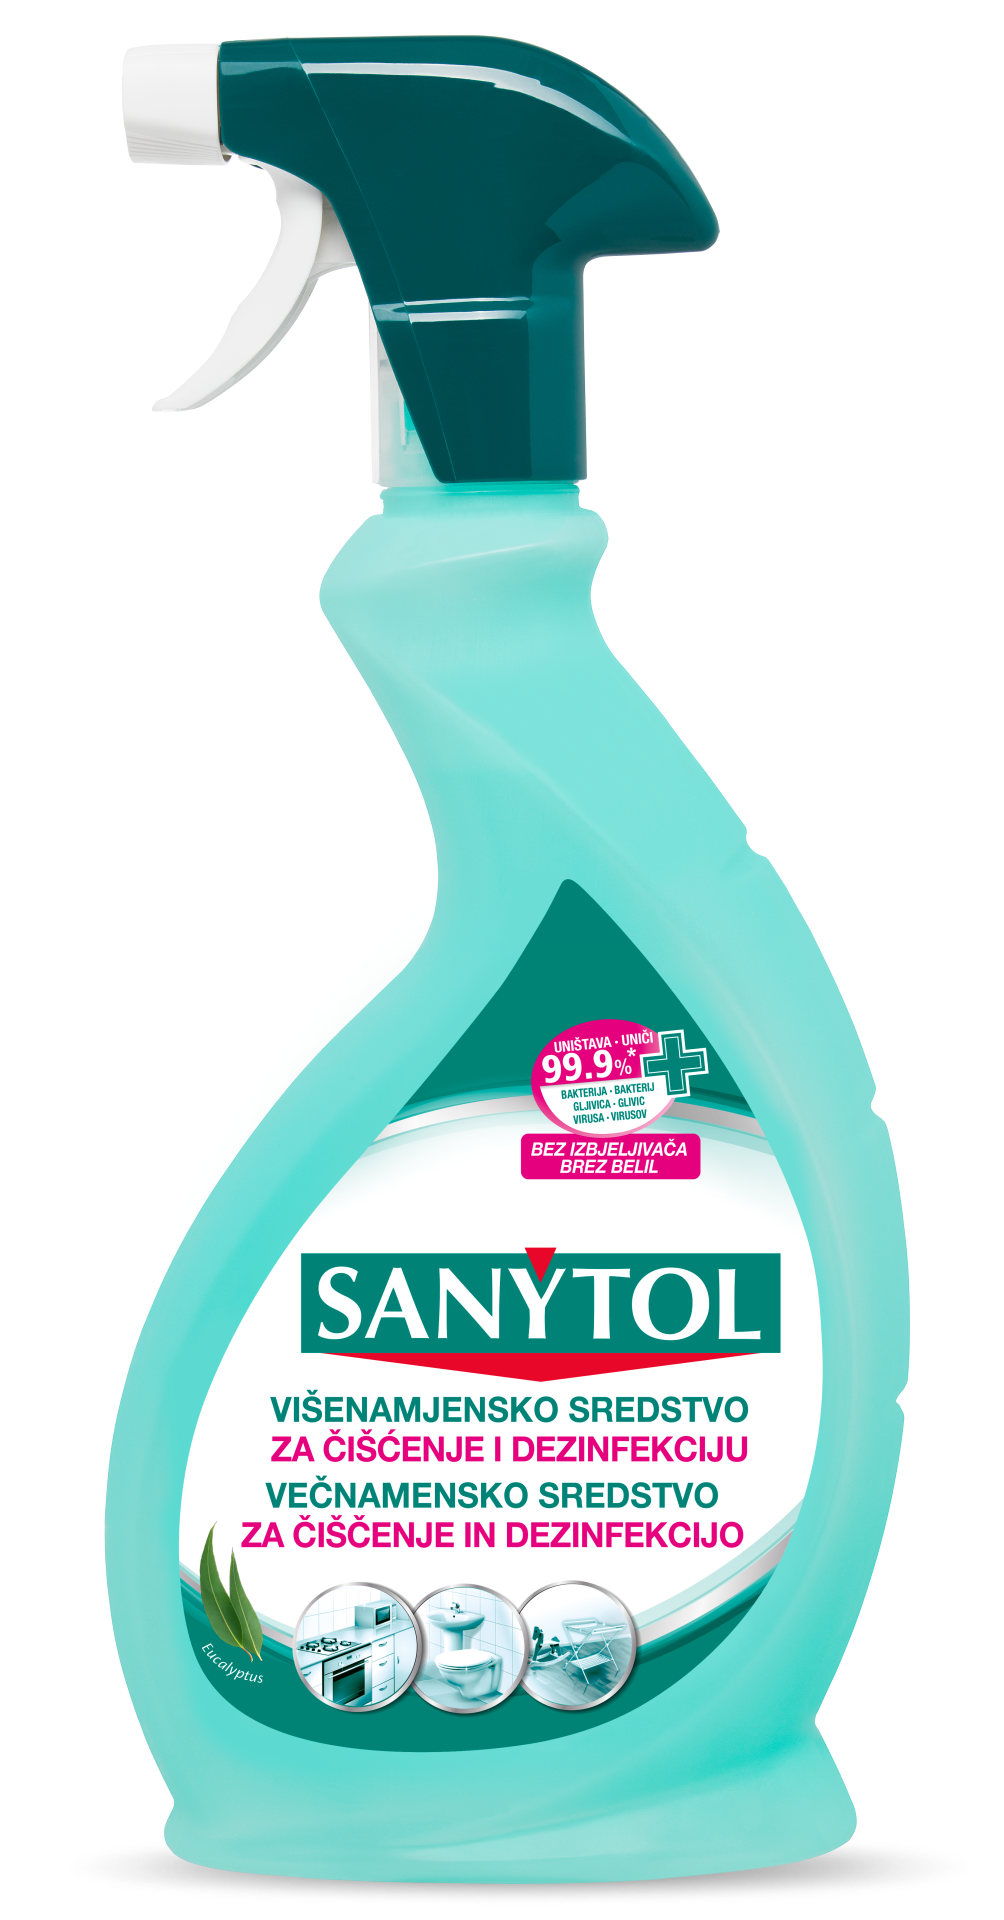 Sanytol – majstor u dezinfekciji koji pruža i 99,9% zaštitu u kućanstvu